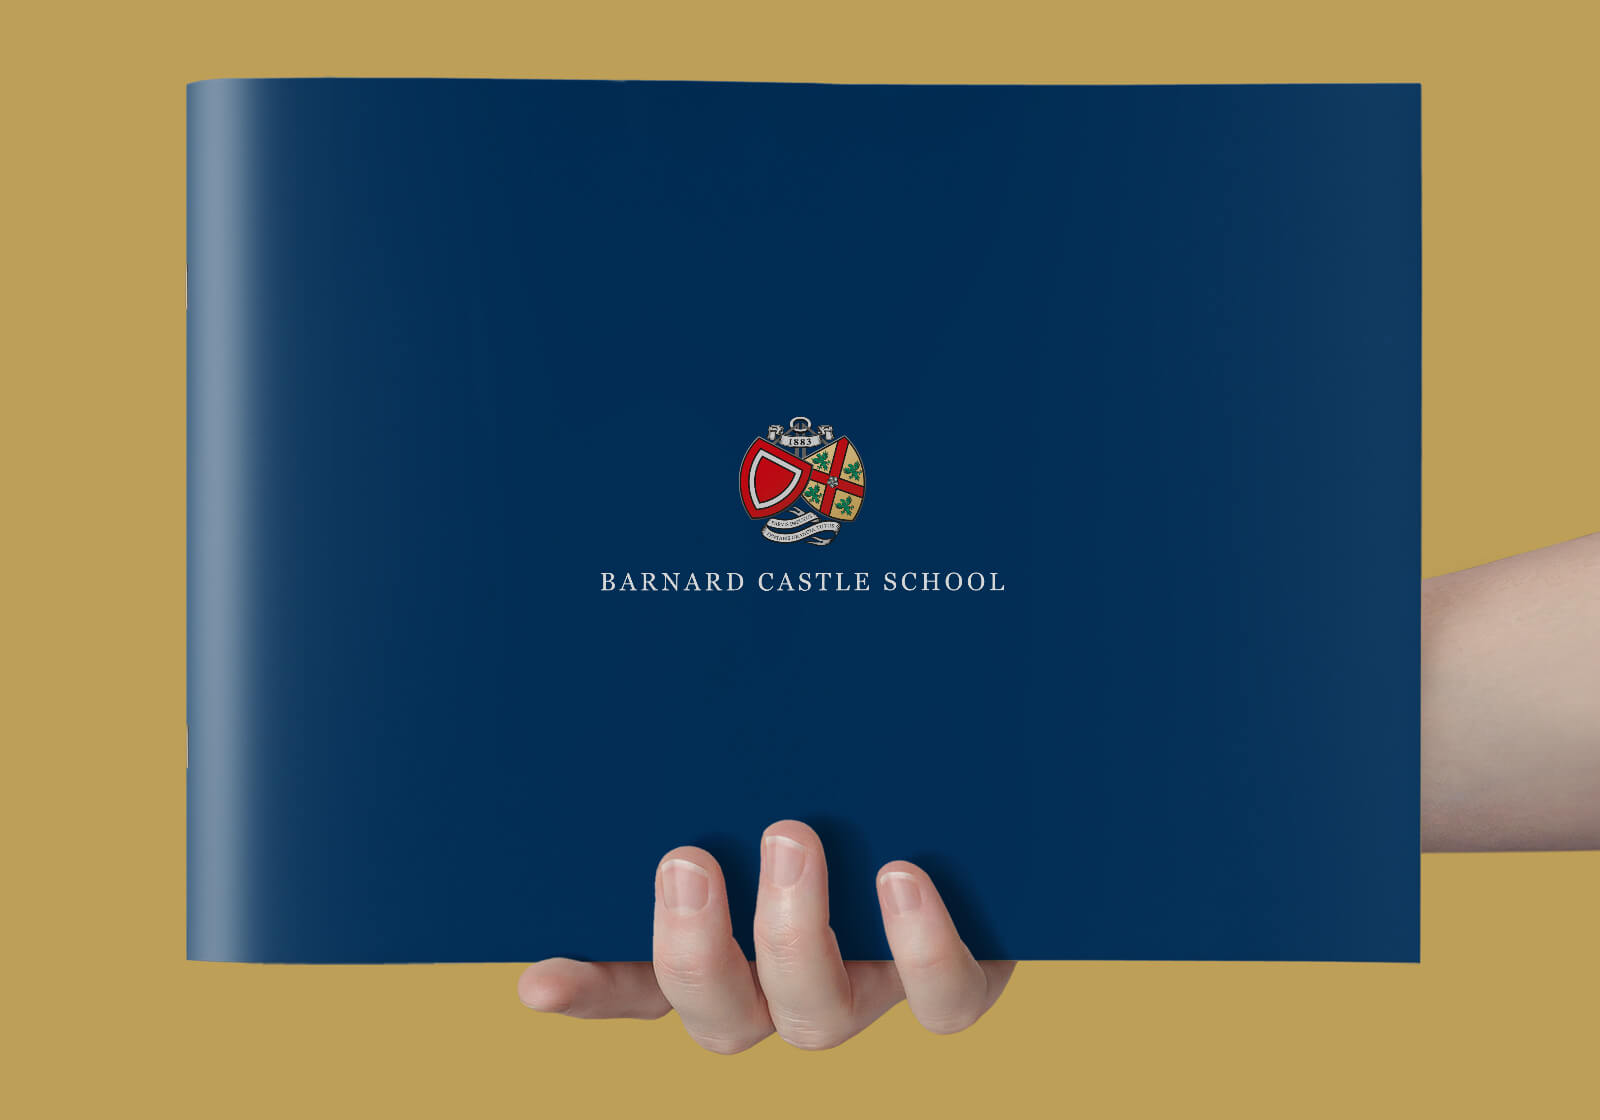 Barnard Castle School